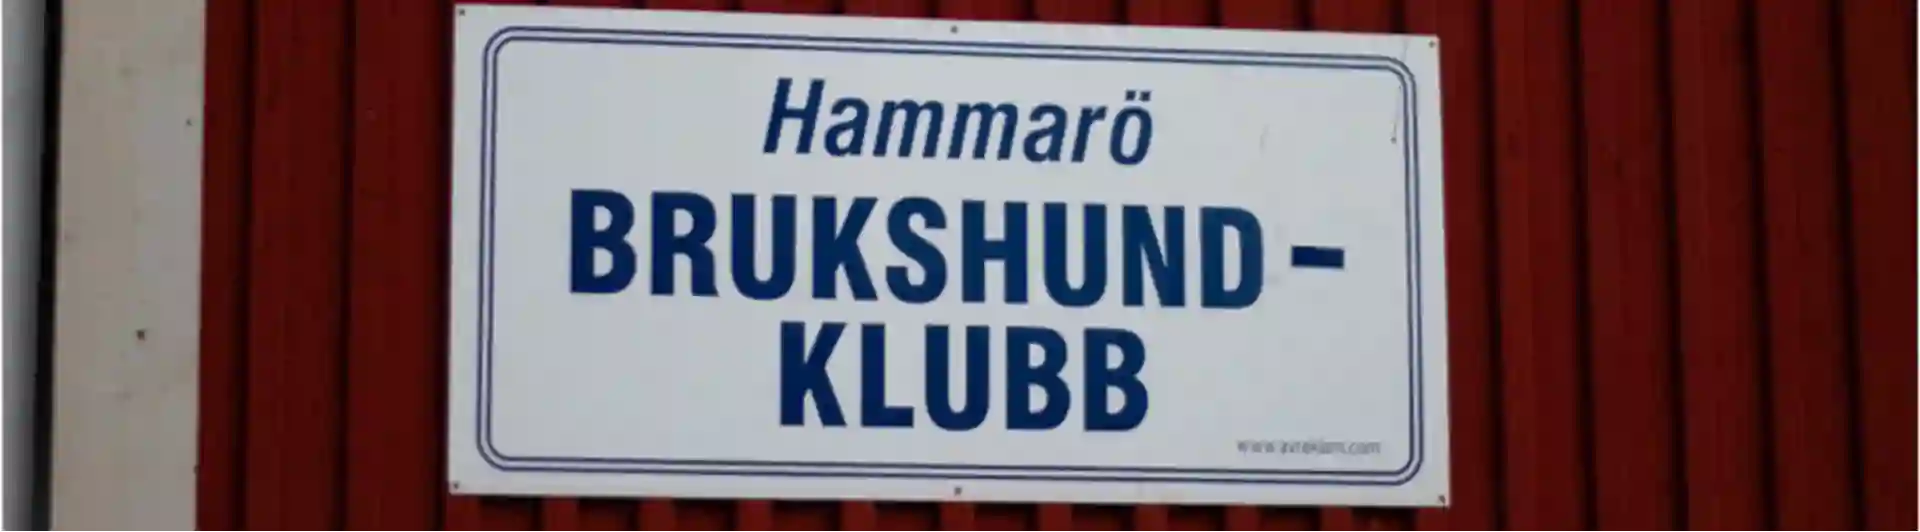 Skylt med texten: "Välkommen till Hammarö Brukshundklubb".